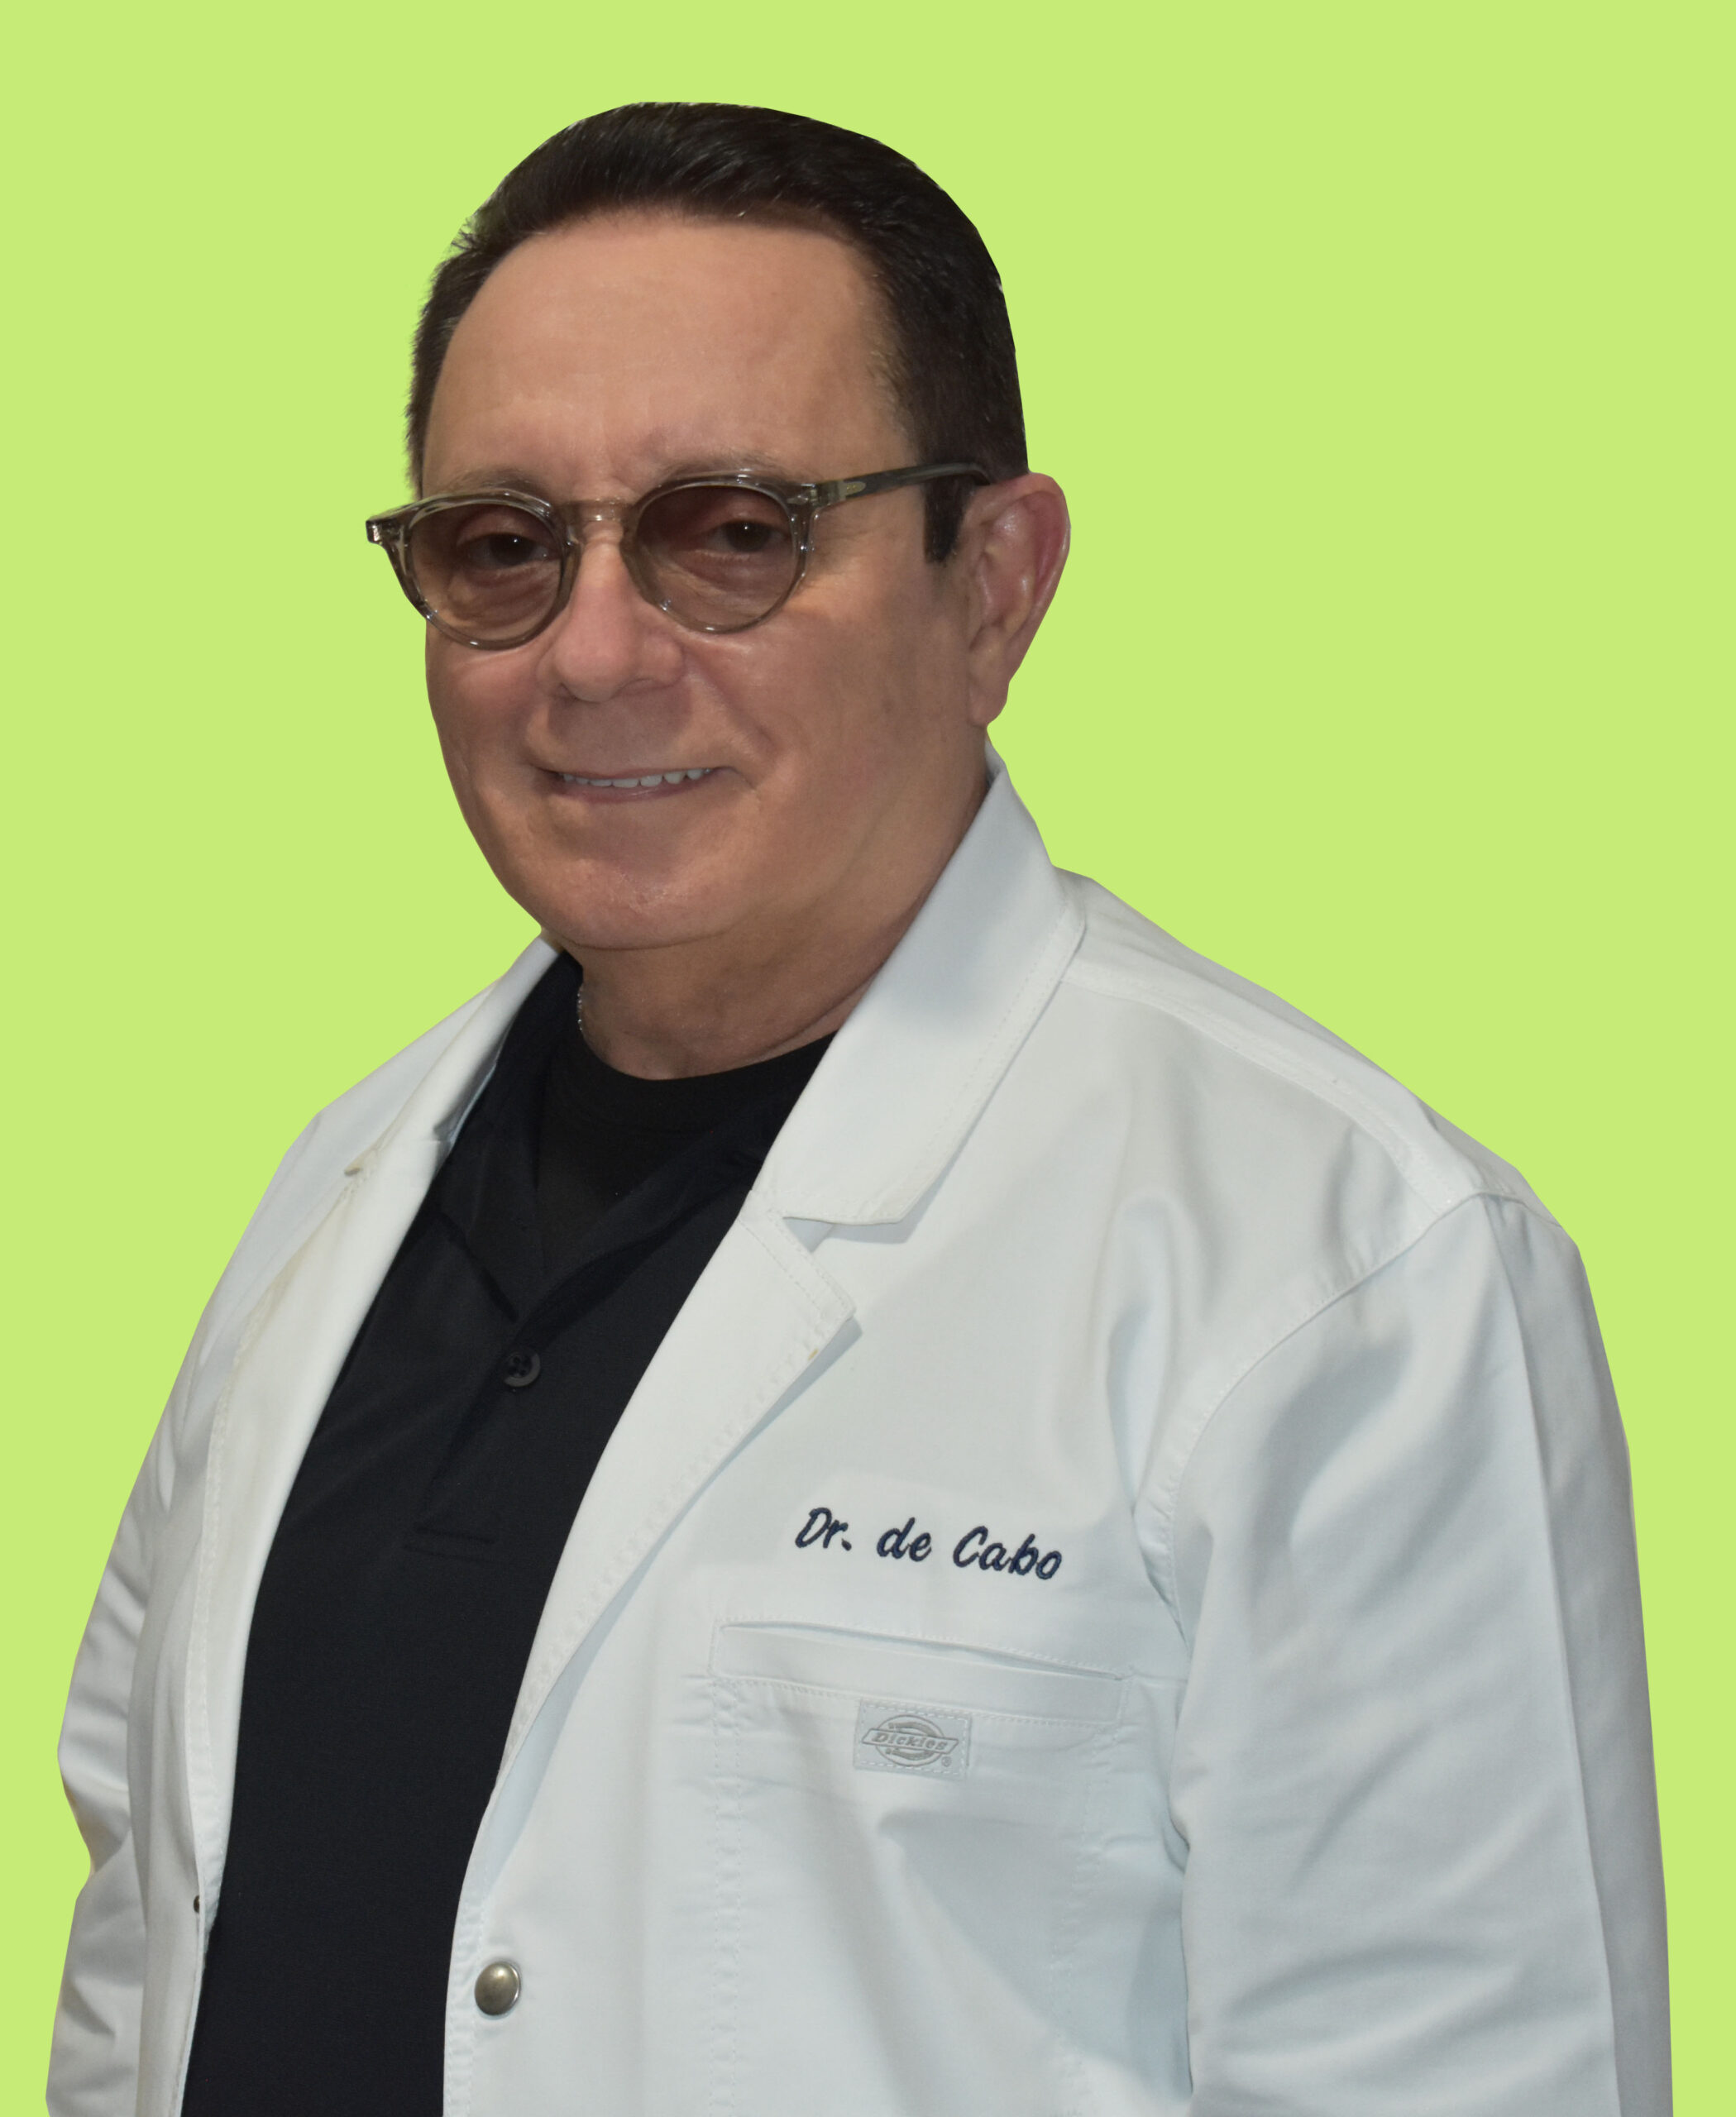 Dr de Cabo